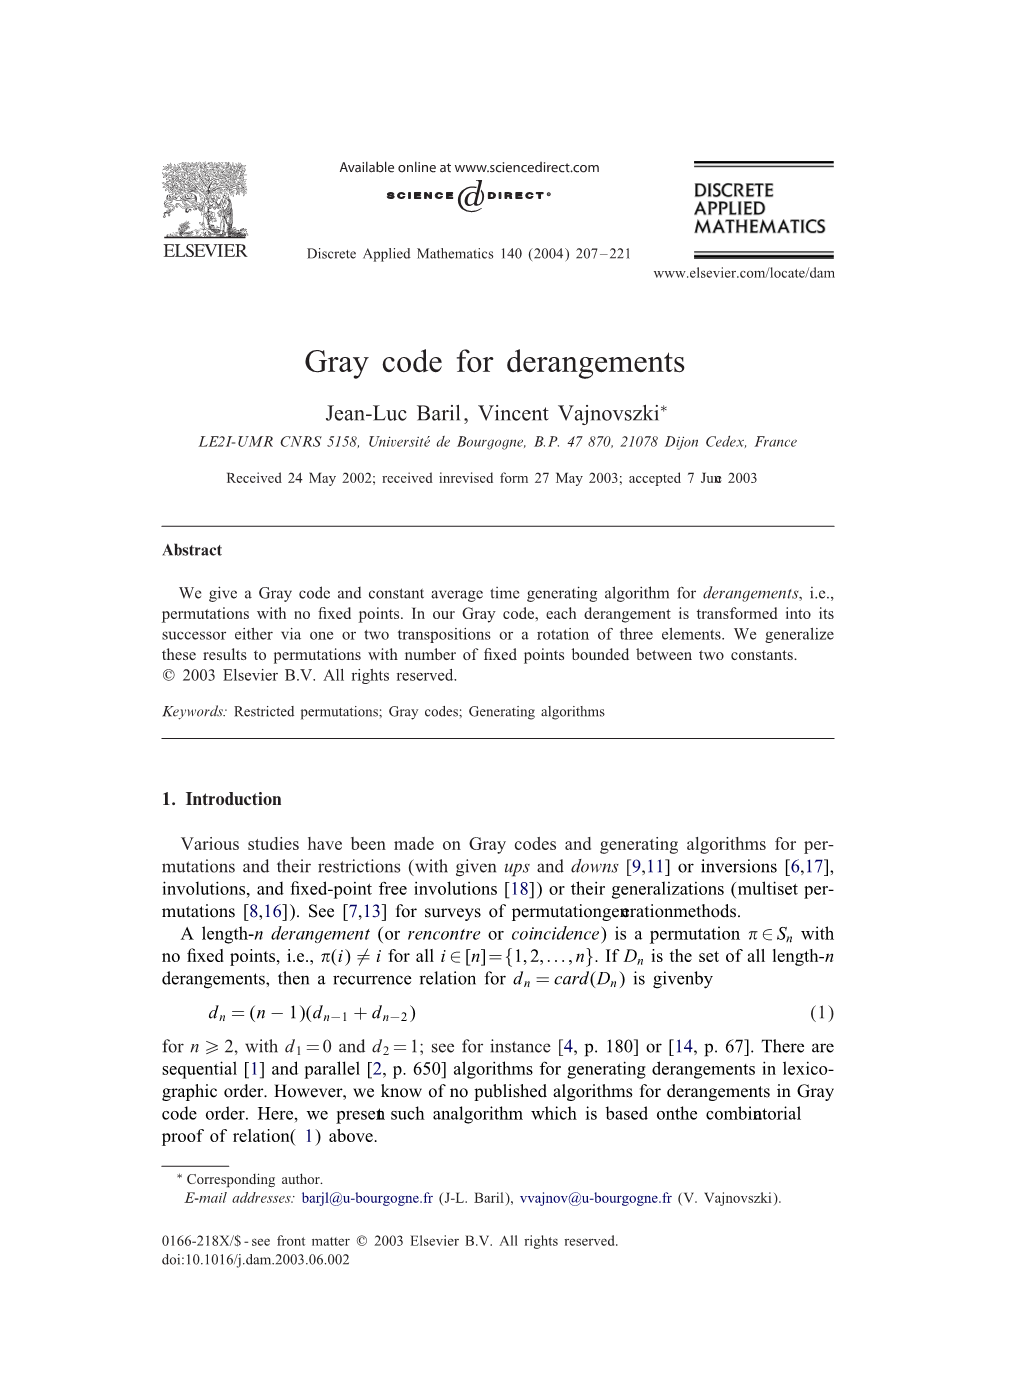 Gray Code for Derangements